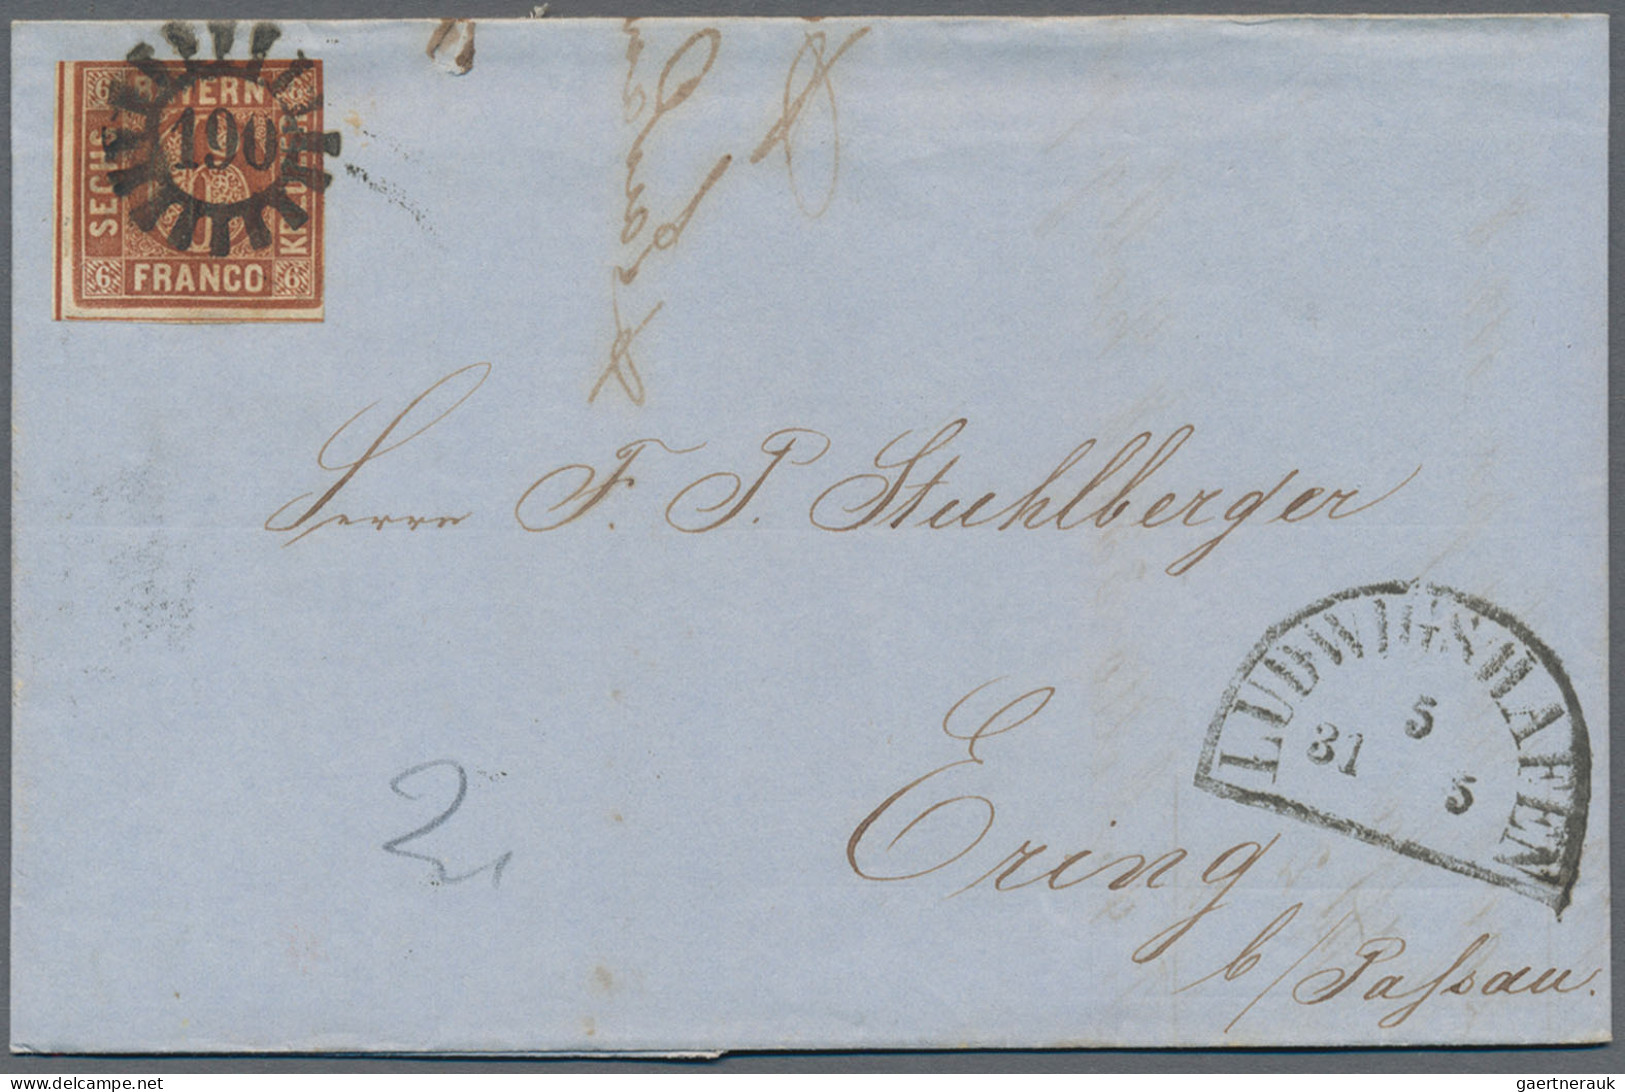 Bayern - Marken und Briefe: 1852/1861 (ca.), 6 Kr. braun (MiNr. 4 II), Partie vo